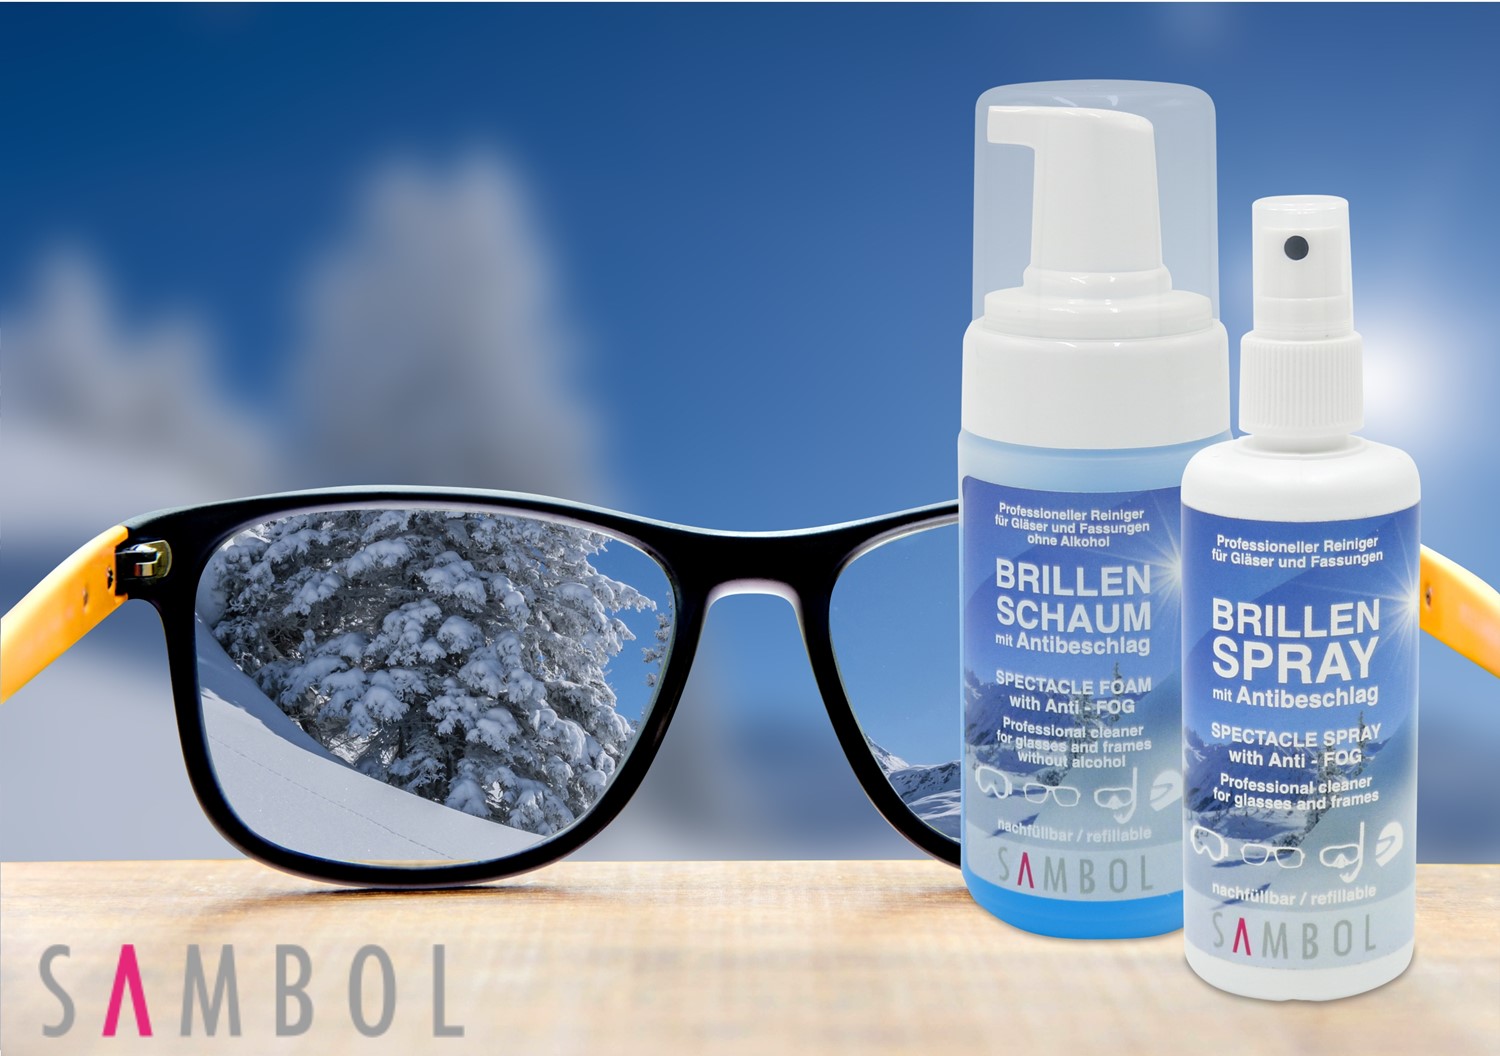 Crullé Antibeschlag-Reinigungsspray für Brillen für 30ml